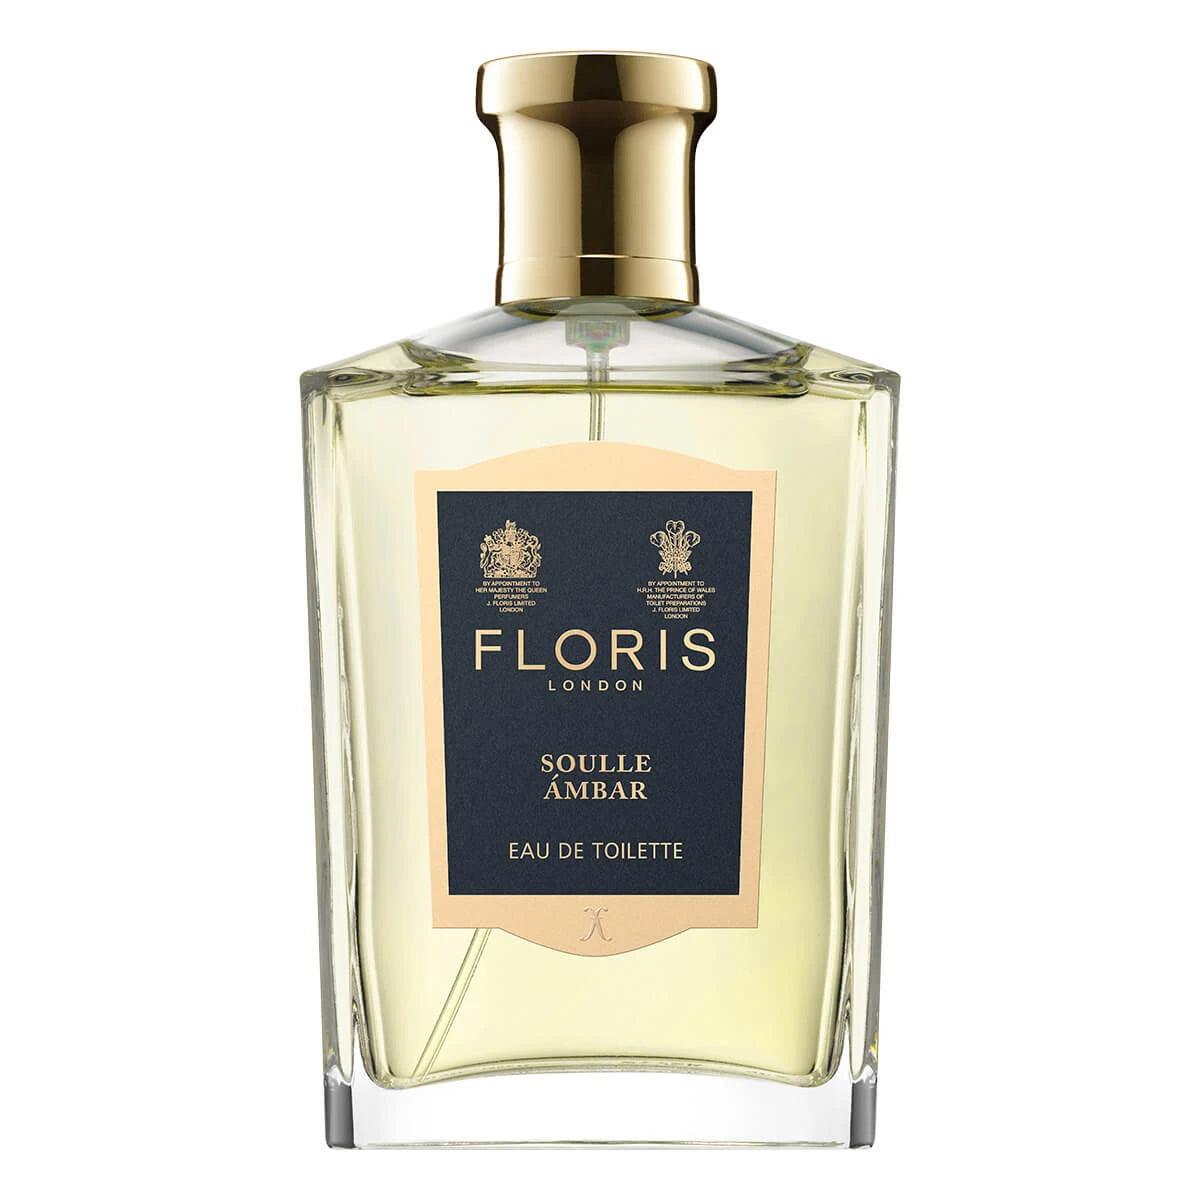 Floris London Floris Soulle Ambar, Eau de Toilette, 100 ml | Parfyme | Floris London | JK SHOP | JK Barber og herre frisør | Lavepriser | Best